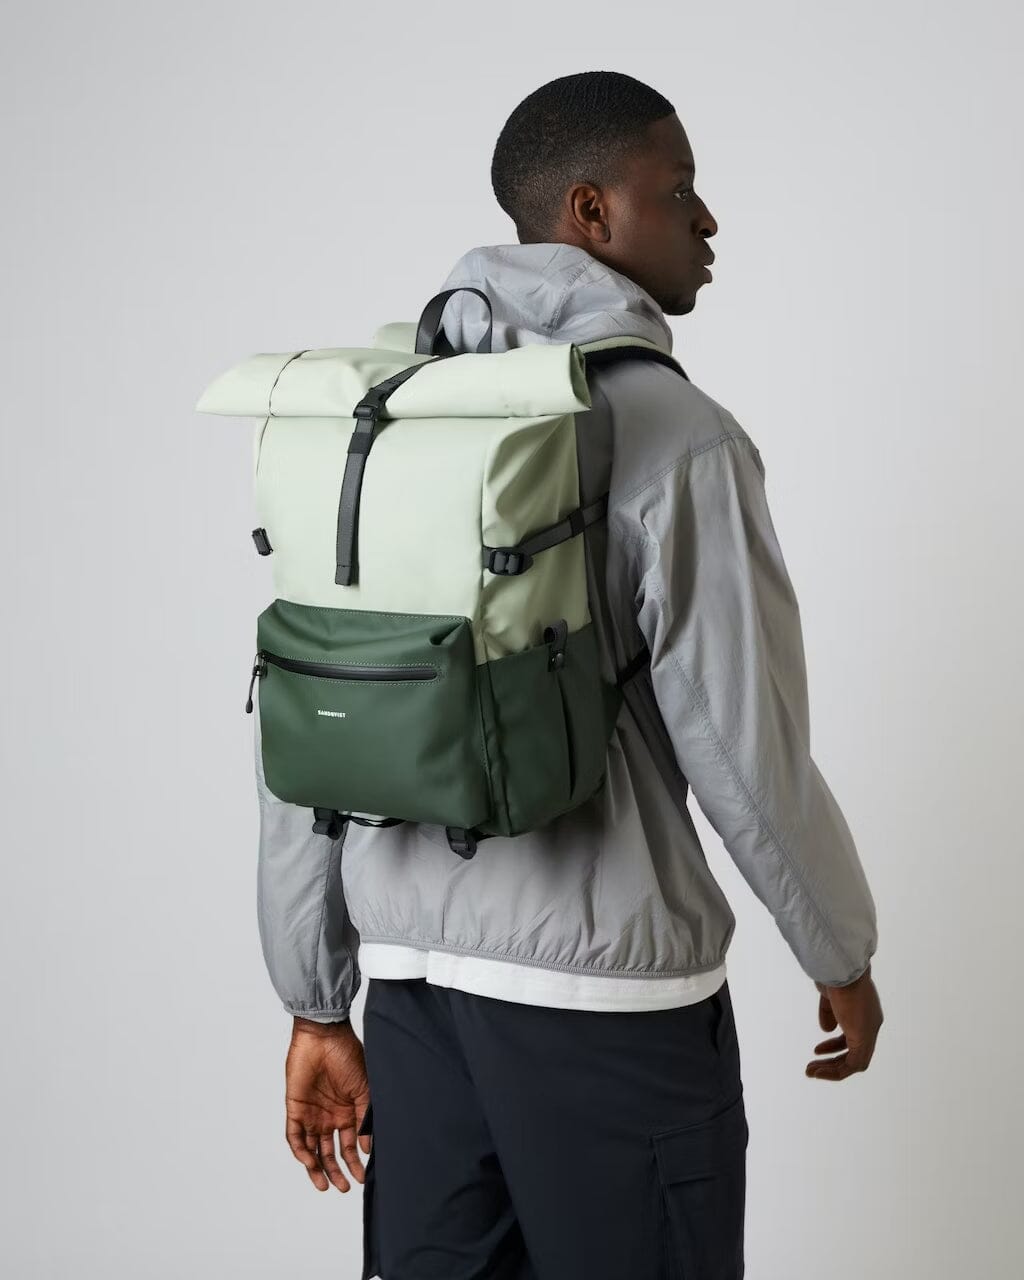 man model wearing waterproof commute backpack ruben 2 sandqvist light green color